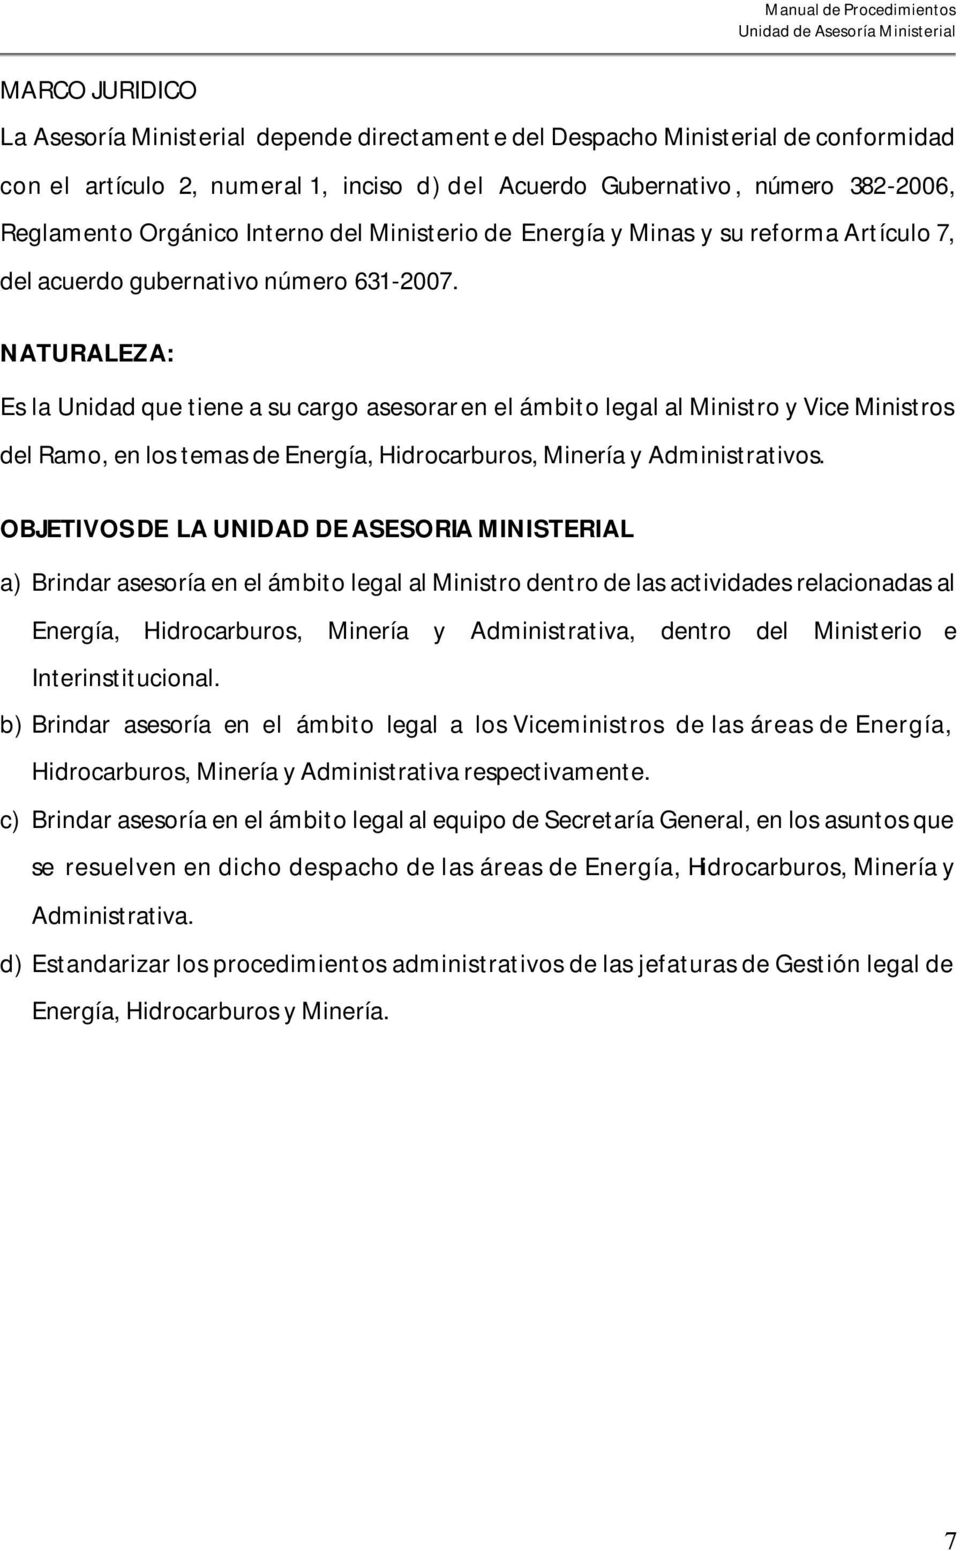 NATURALEZA: Es la Unidad que tiene a su cargo asesorar en el ámbito legal al Ministro y Vice Ministros del Ramo, en los temas de Energía, Hidrocarburos, Minería y Administrativos.